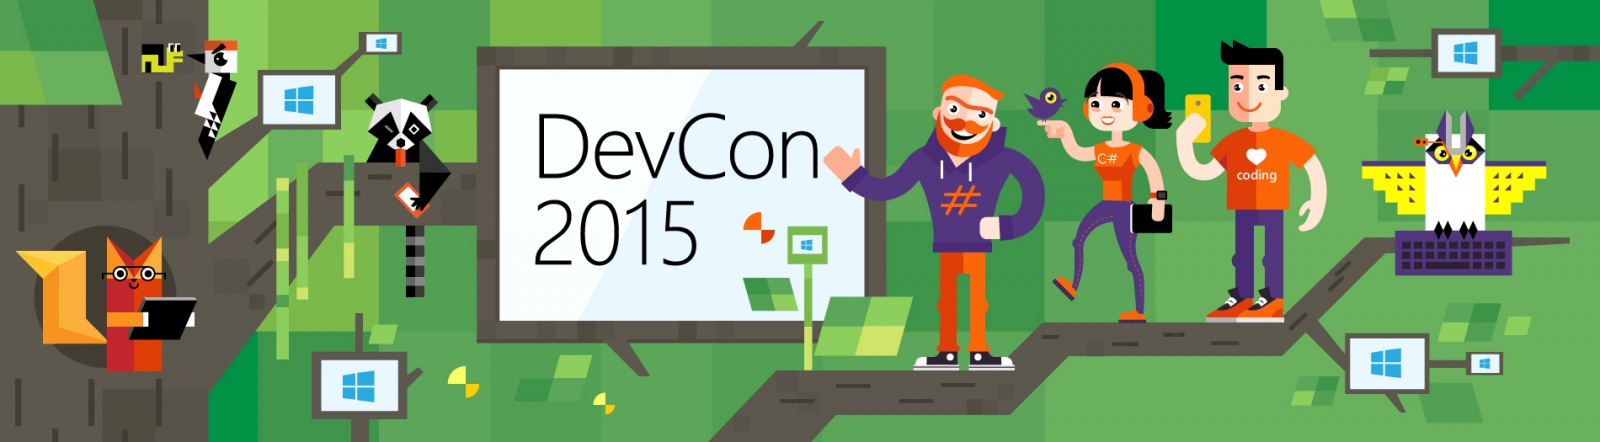 DevCon 2015: анонс третьей волны докладчиков конференции - 1